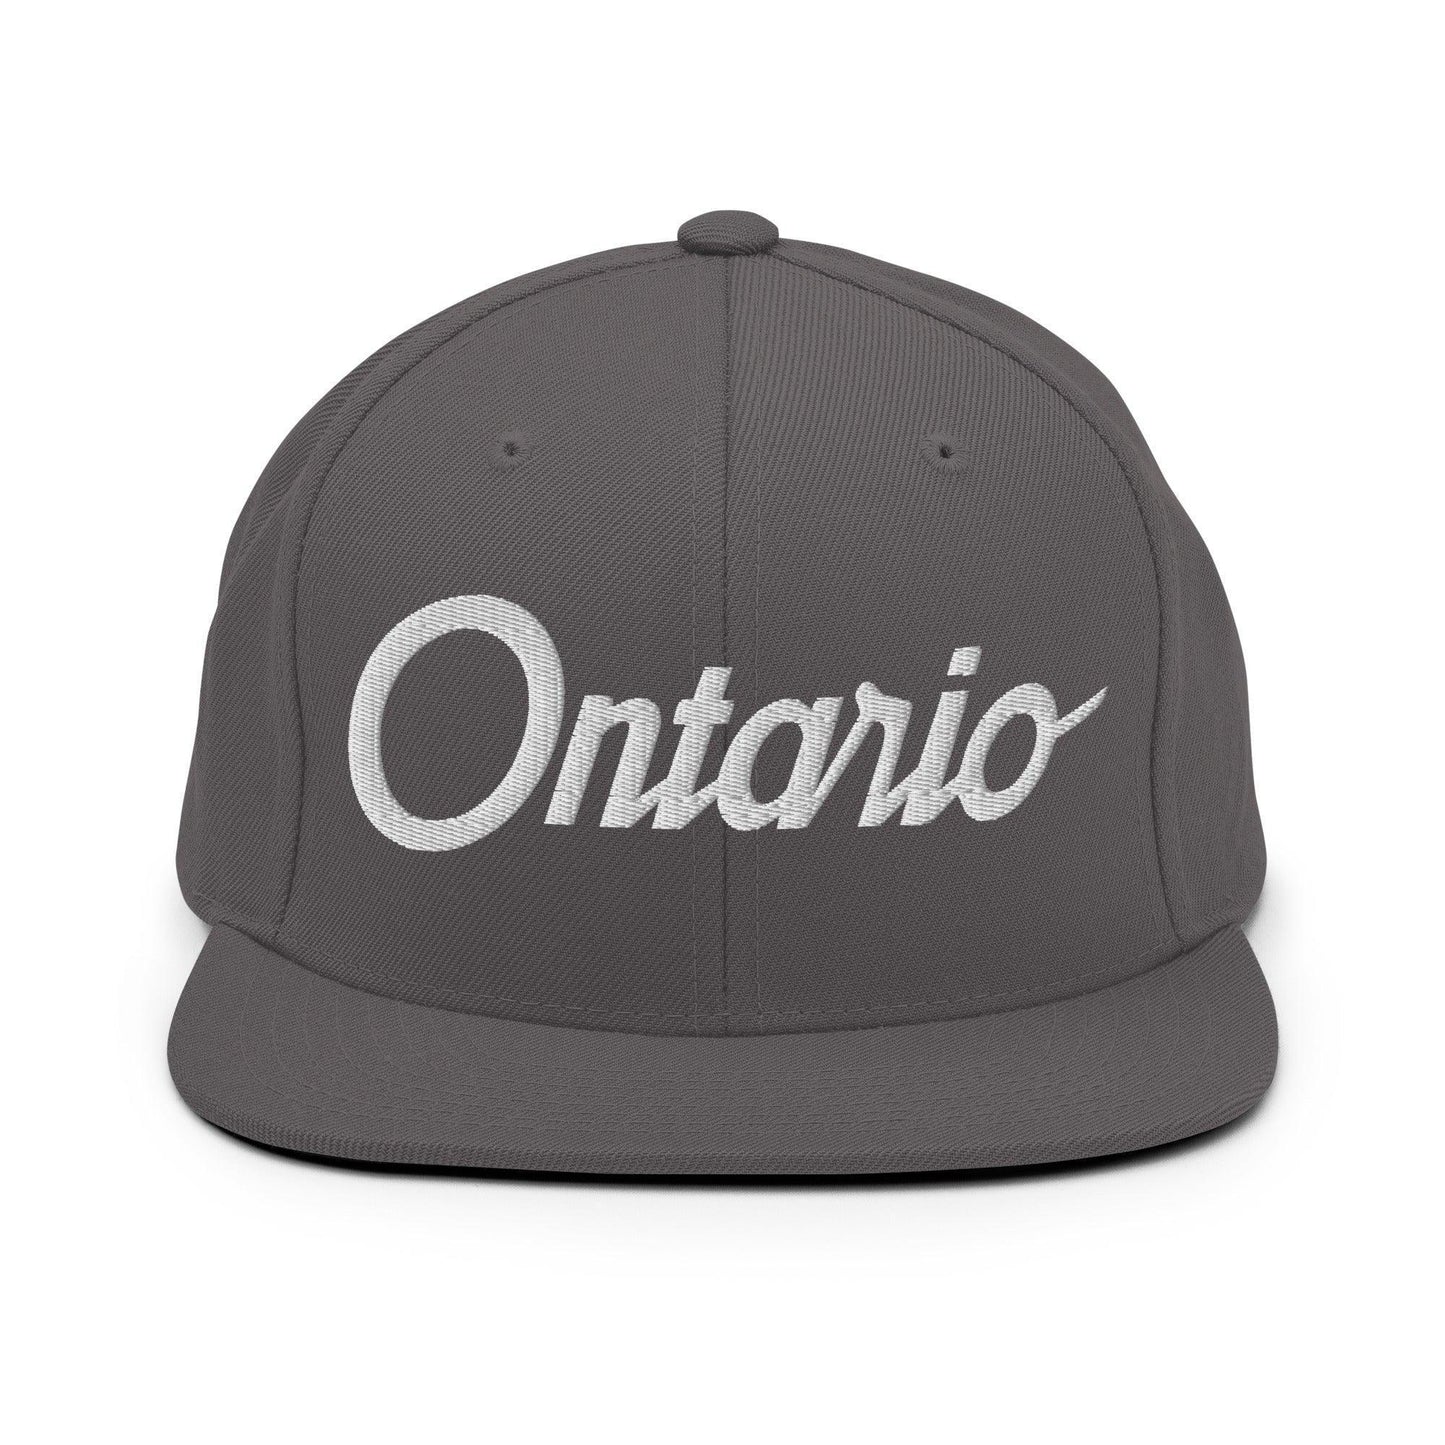 Ontario Script Snapback Hat Dark Grey